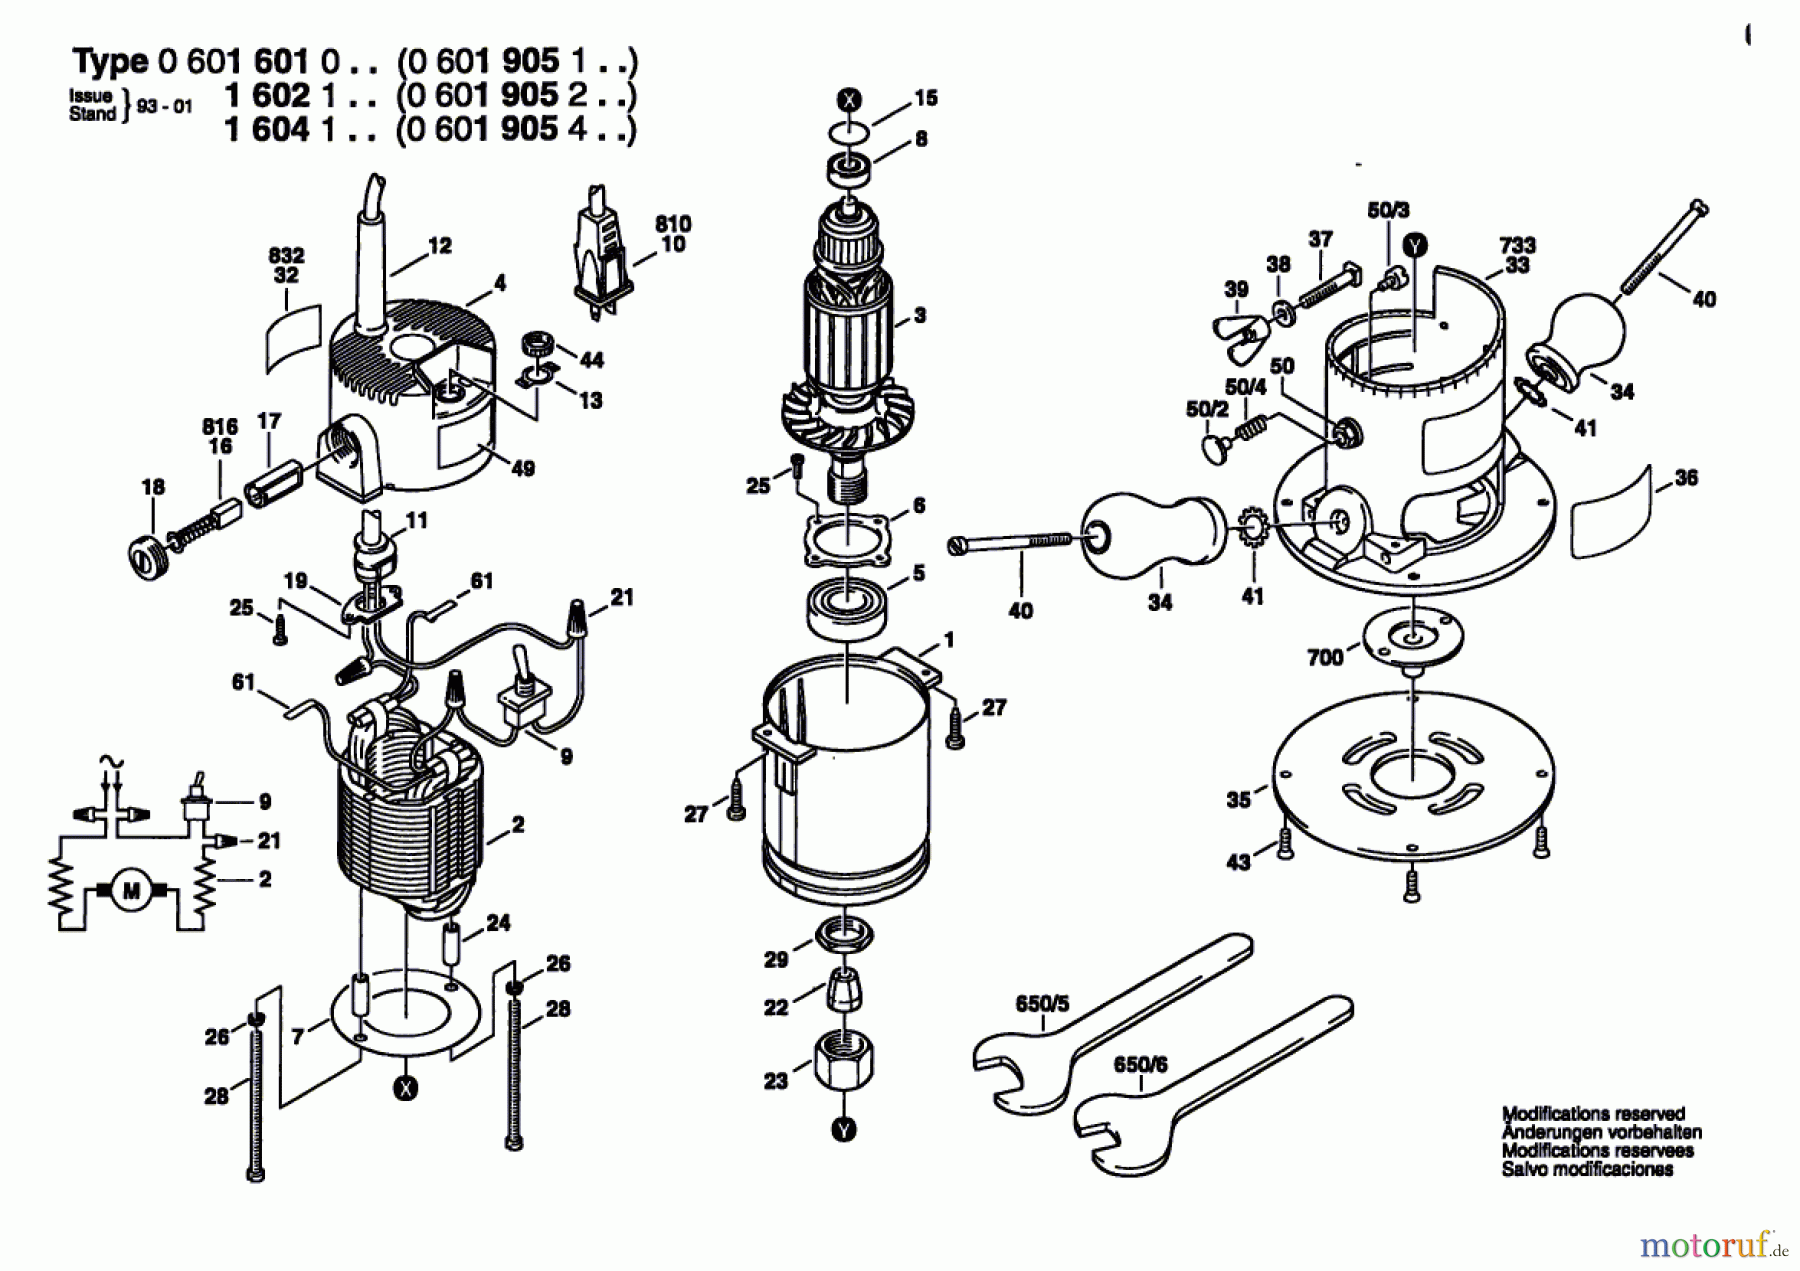  Bosch Werkzeug Oberfräse 19051 Seite 1